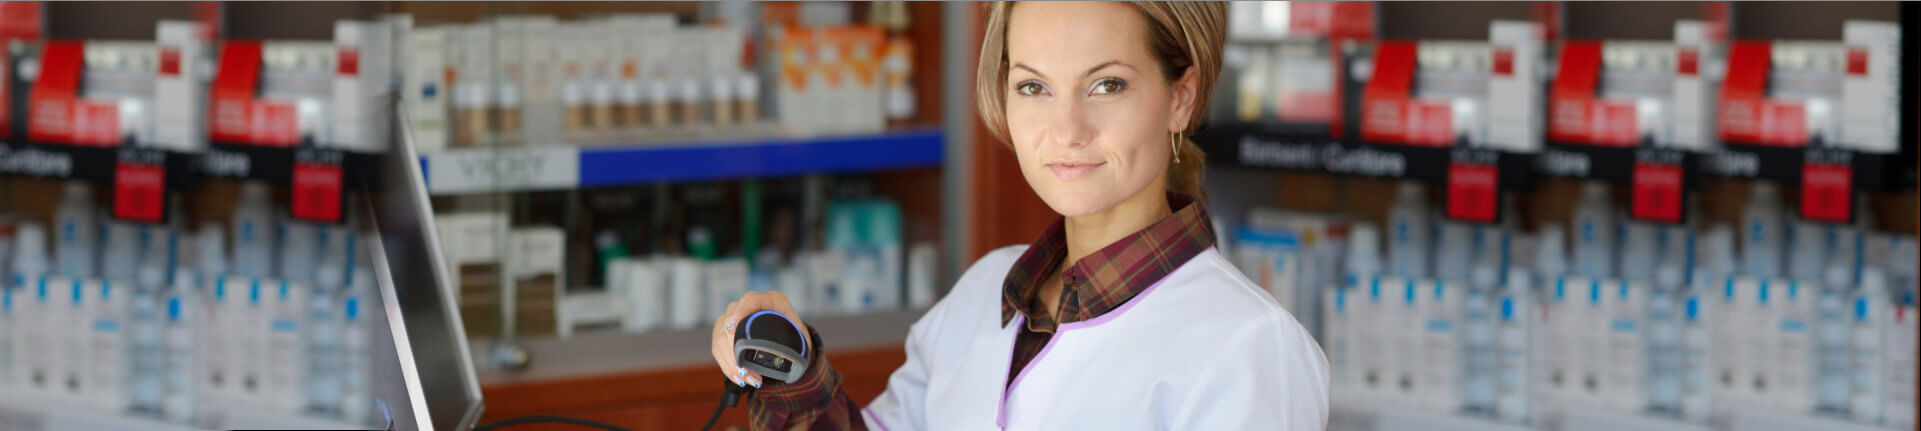 female pharmacist holding prescription